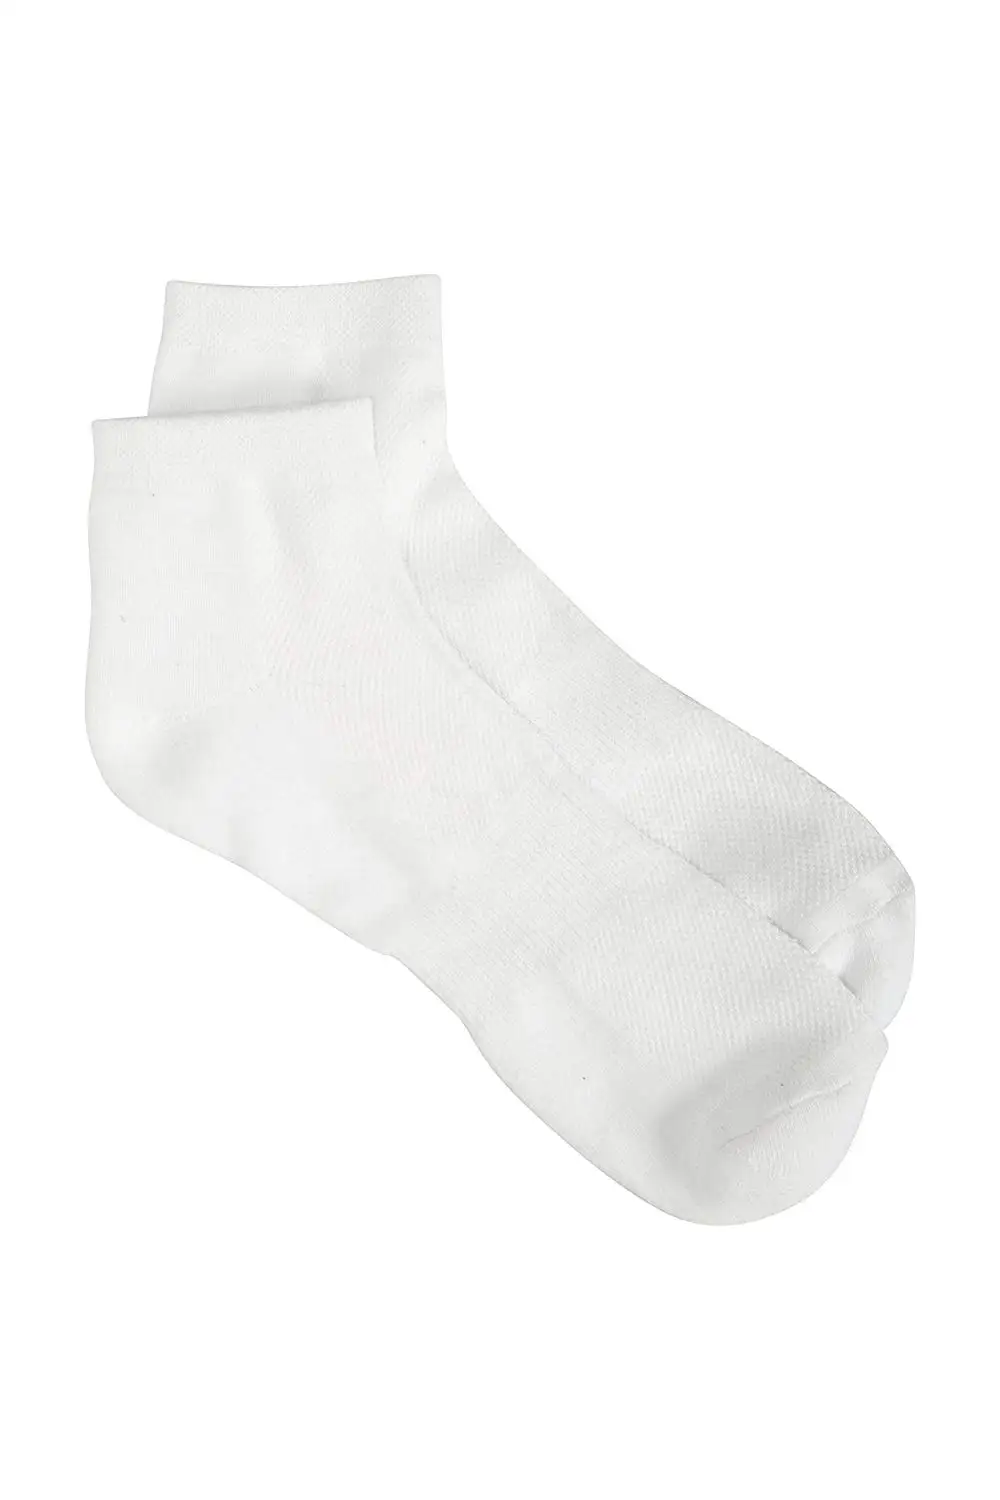 Socks Men's Clothing Mens Umbro Trainer Liner Sports Ankle Socks Summer ...